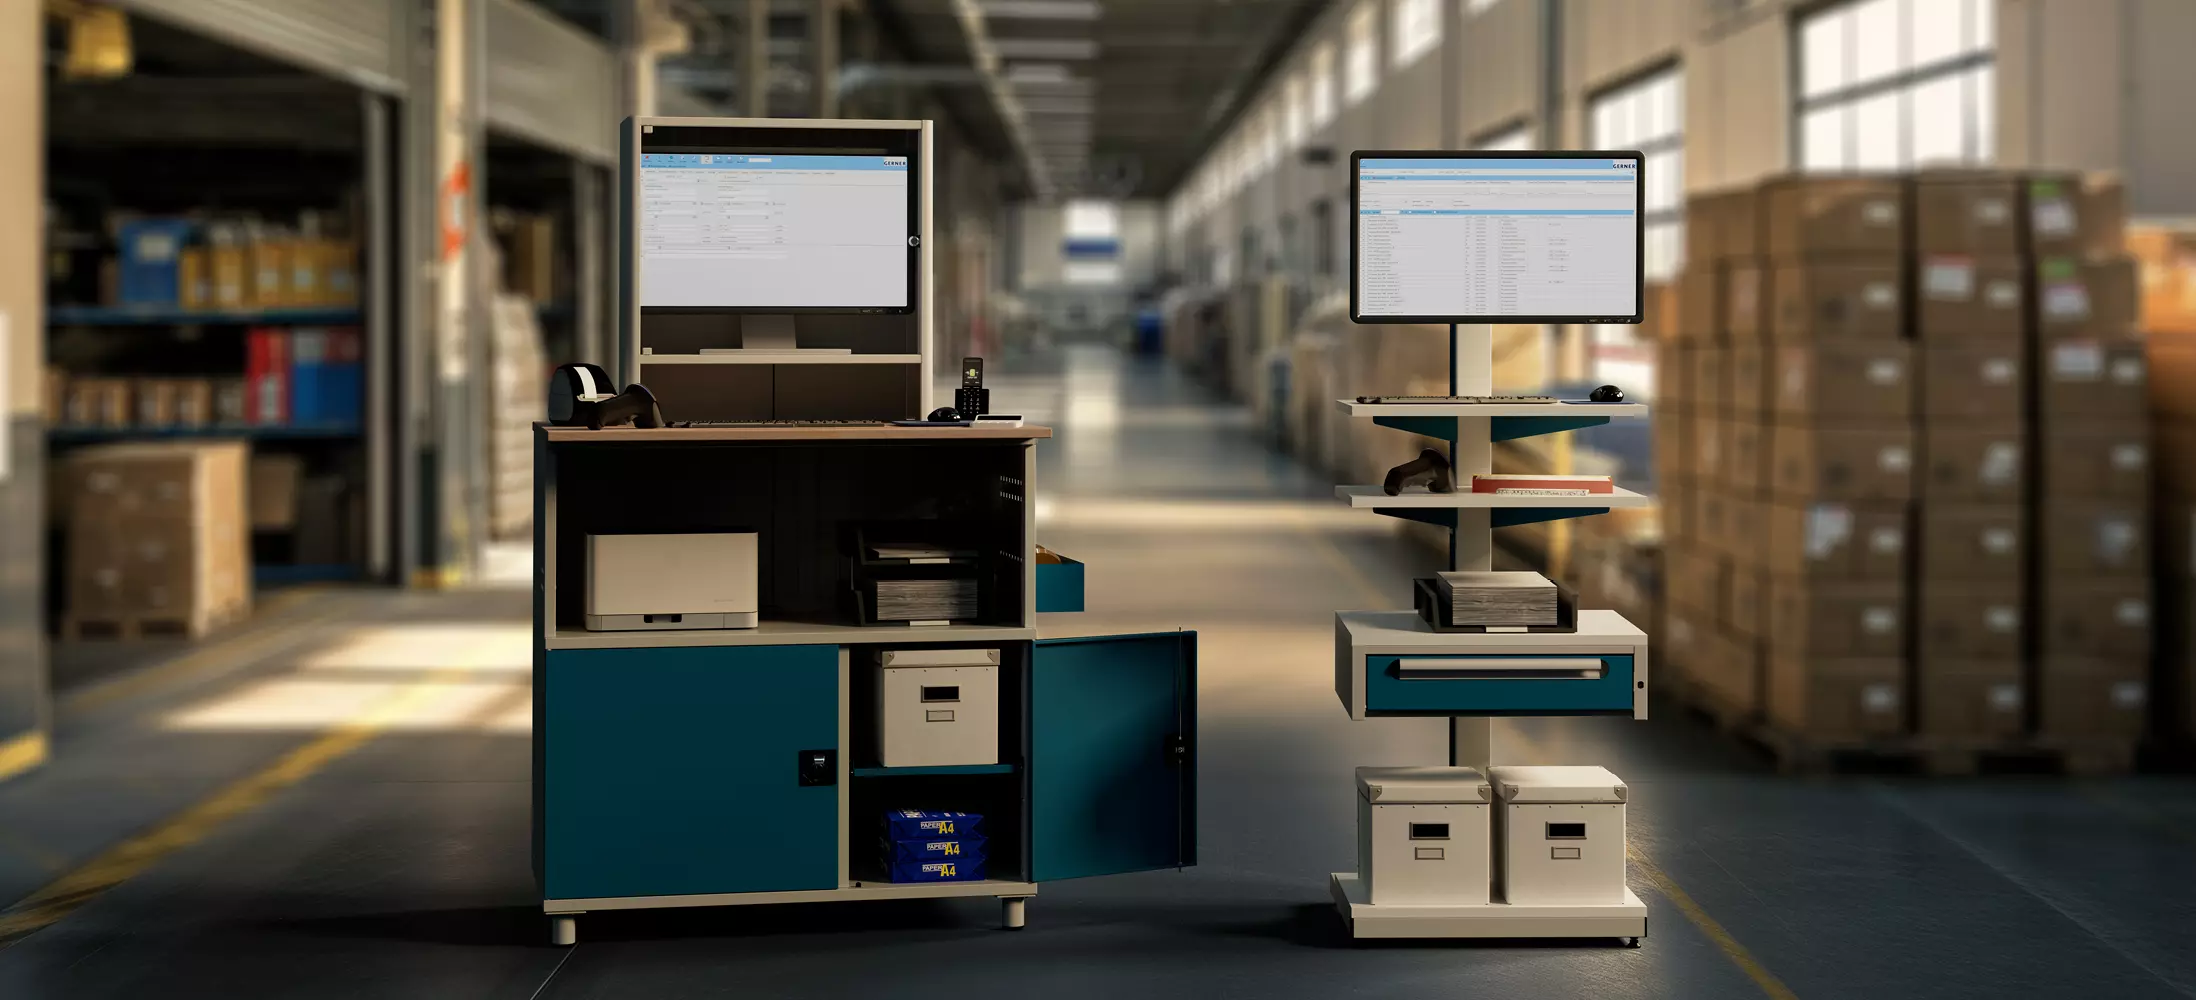 PC-Arbeitsplätze mit zwei Monitoren auf Schränken in einer Lagerhalle, ausgestattet mit Druckern und Büromaterial, im Hintergrund Regale mit Lagerkisten.